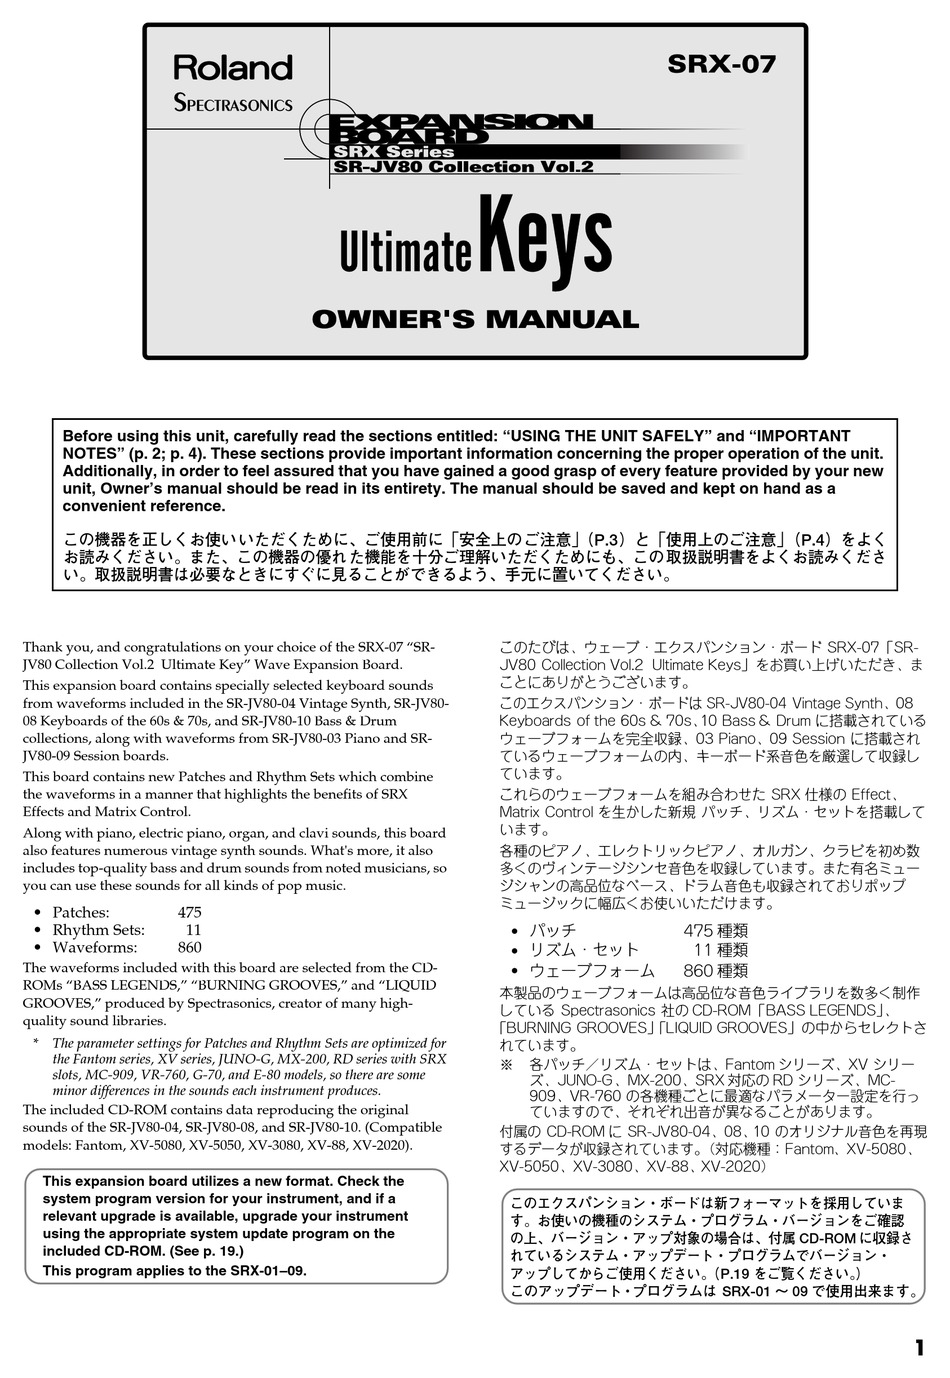 ROLAND ULTIMATE KEYS SRX-07 OWNER'S MANUAL Pdf Download | ManualsLib